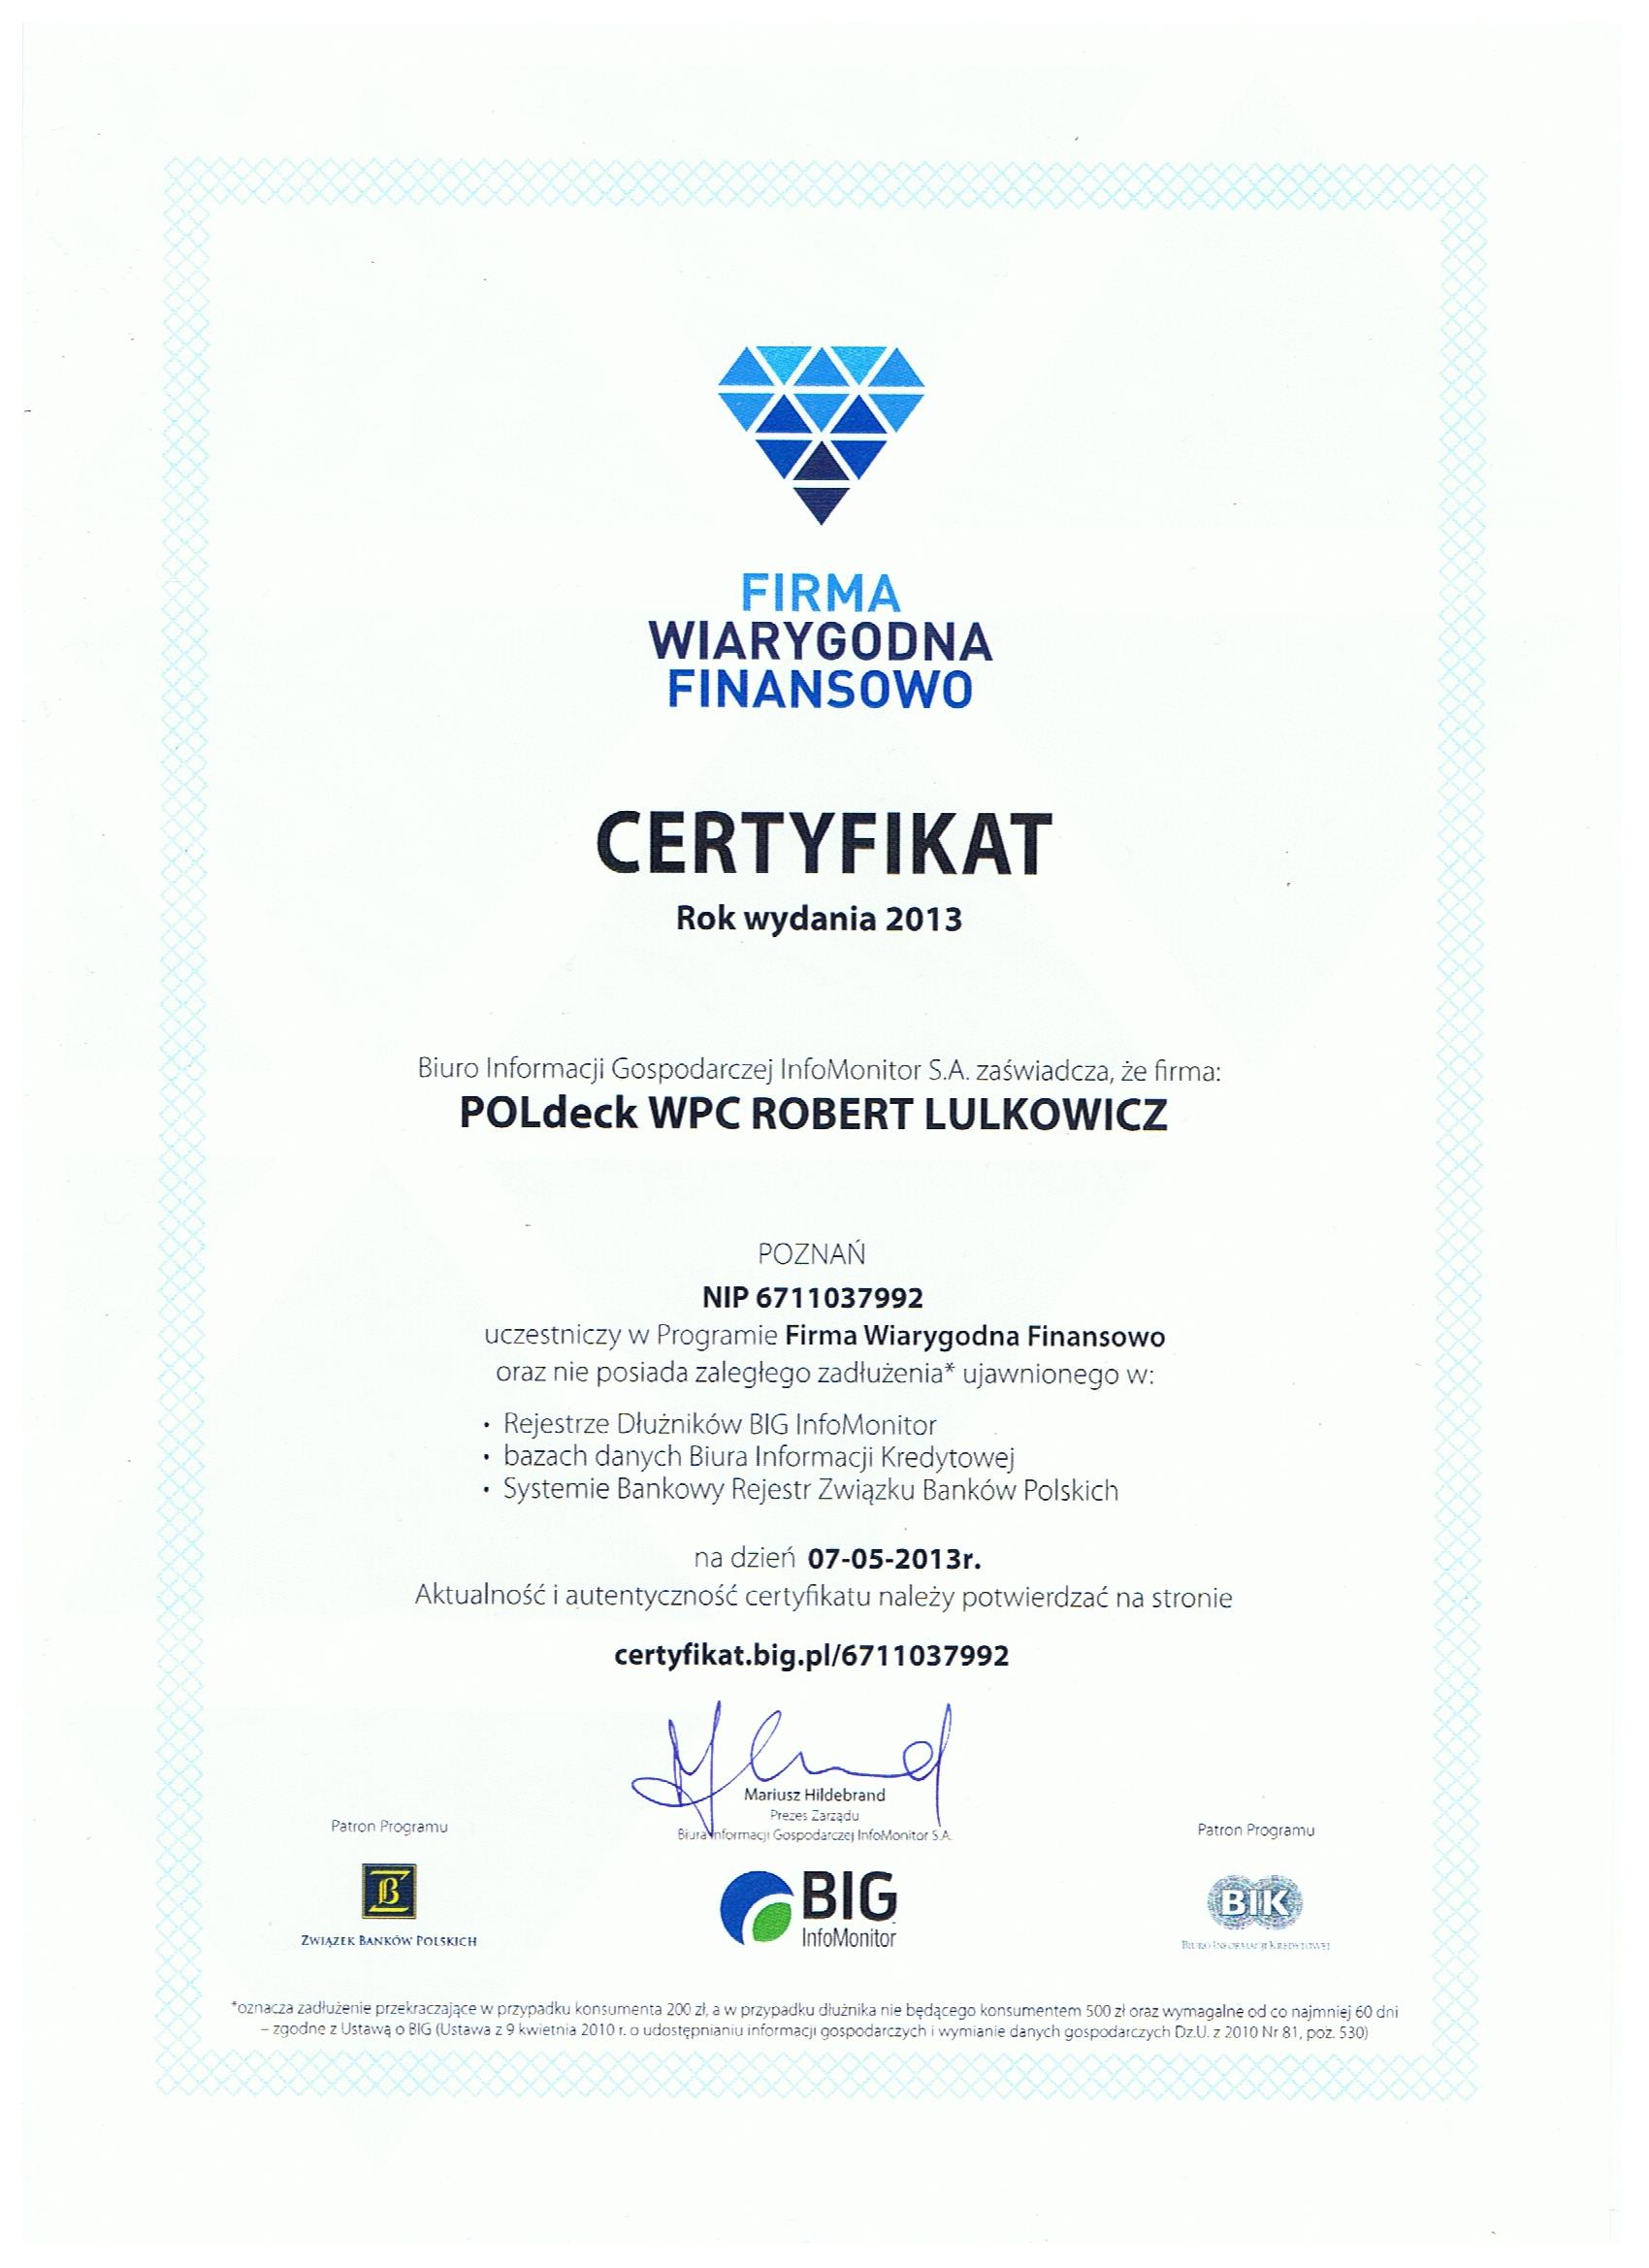 POLdeck WPC - certyfikat Firma Wiarygodna Finansowo